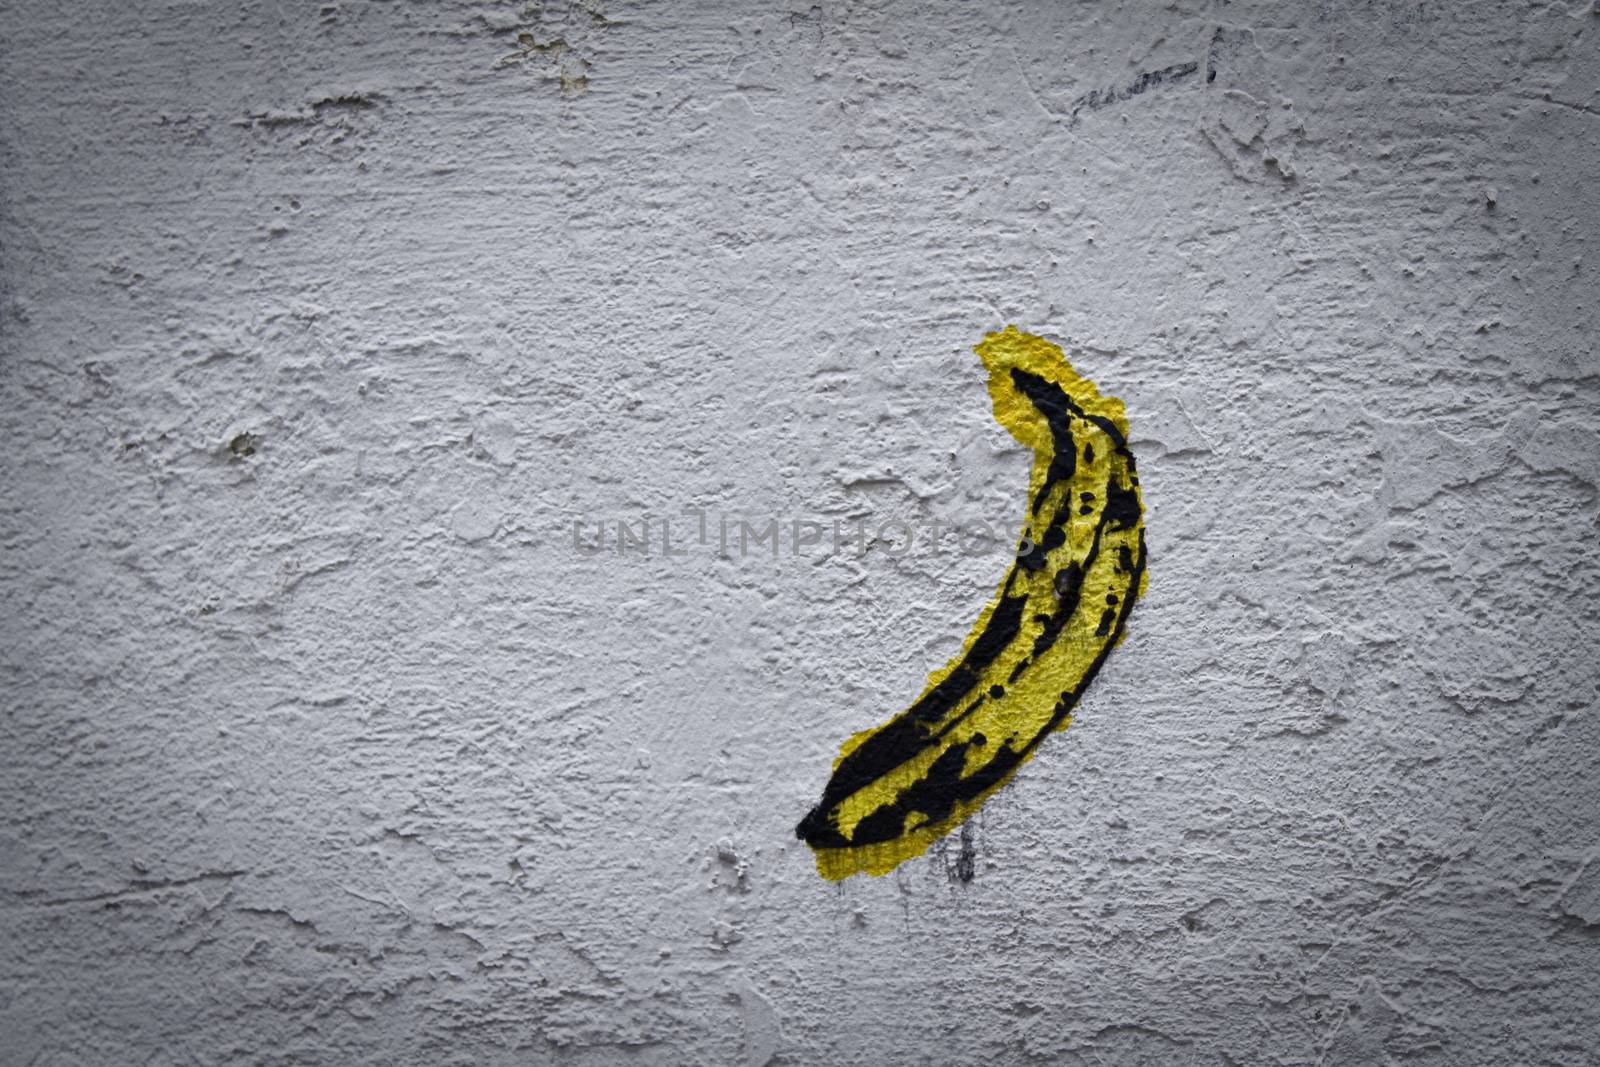 Graffiti of a banana by samULvisuals